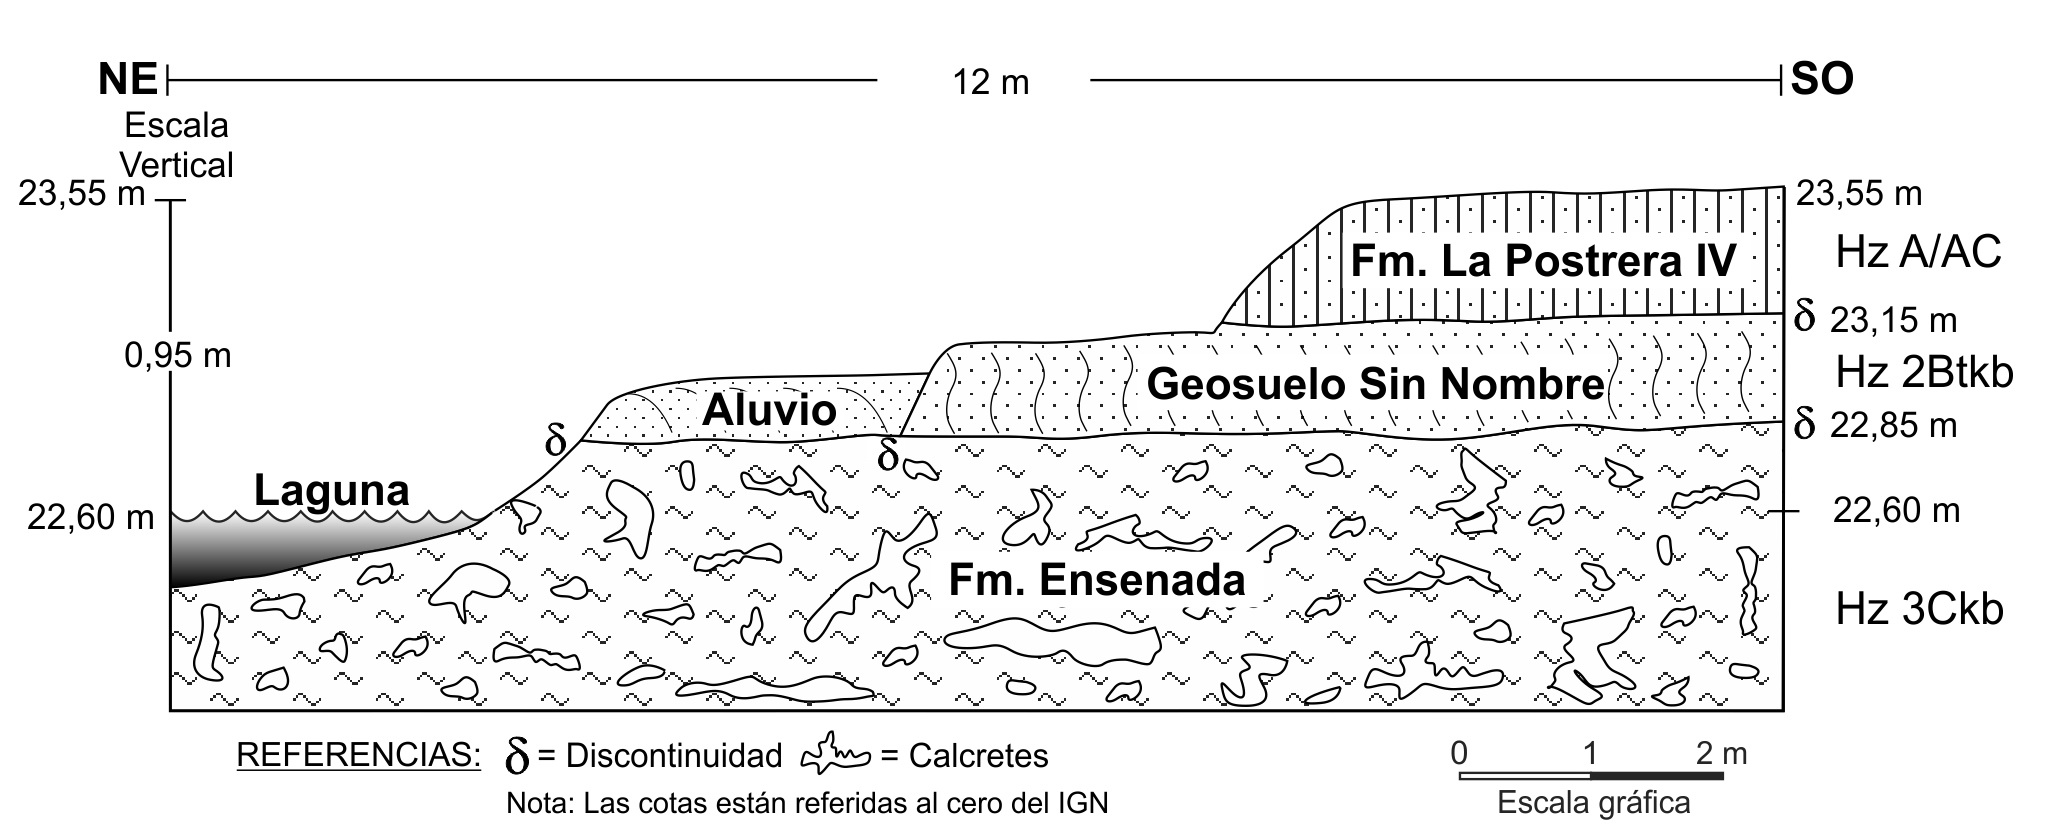 Perfil geológico NO-SE, según la sección B-B’ de la Figura 3. Detalles estratigráficos en la Figura
7.